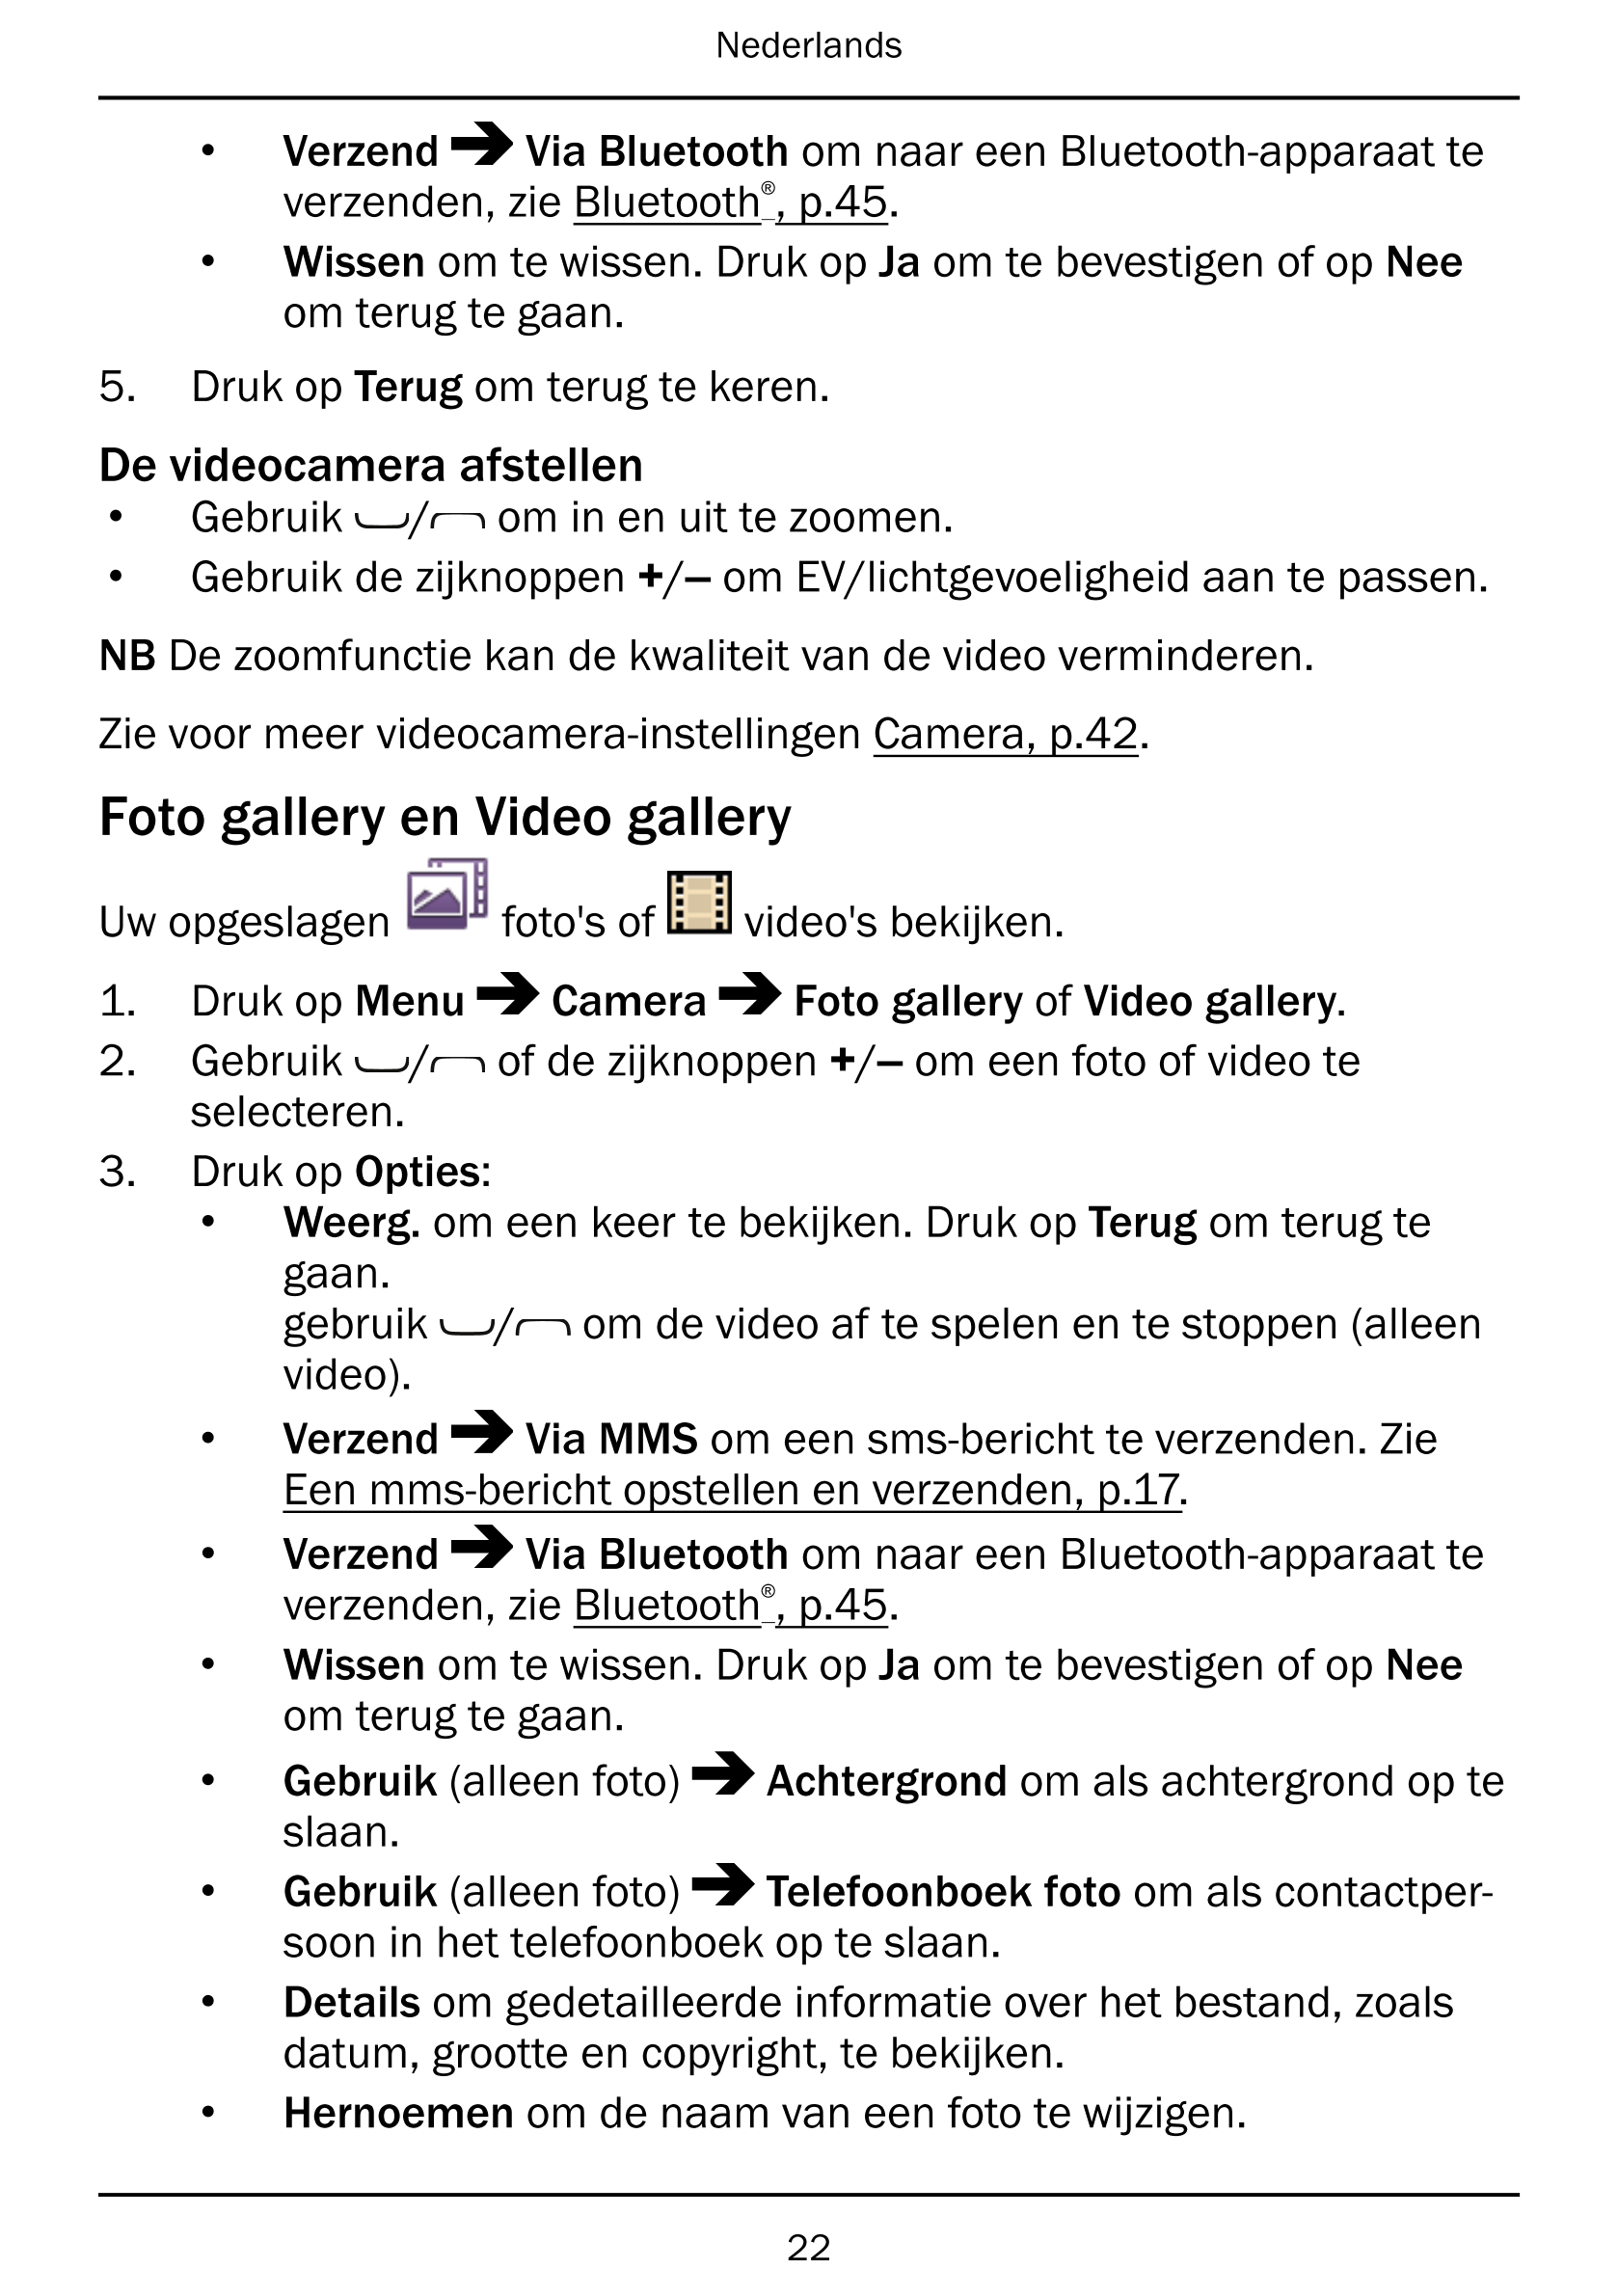 Nederlands
• Verzend Via Bluetooth om naar een Bluetooth-apparaat te
verzenden, zie Bluetooth®, p.45.
• Wissen om te wissen. Dru